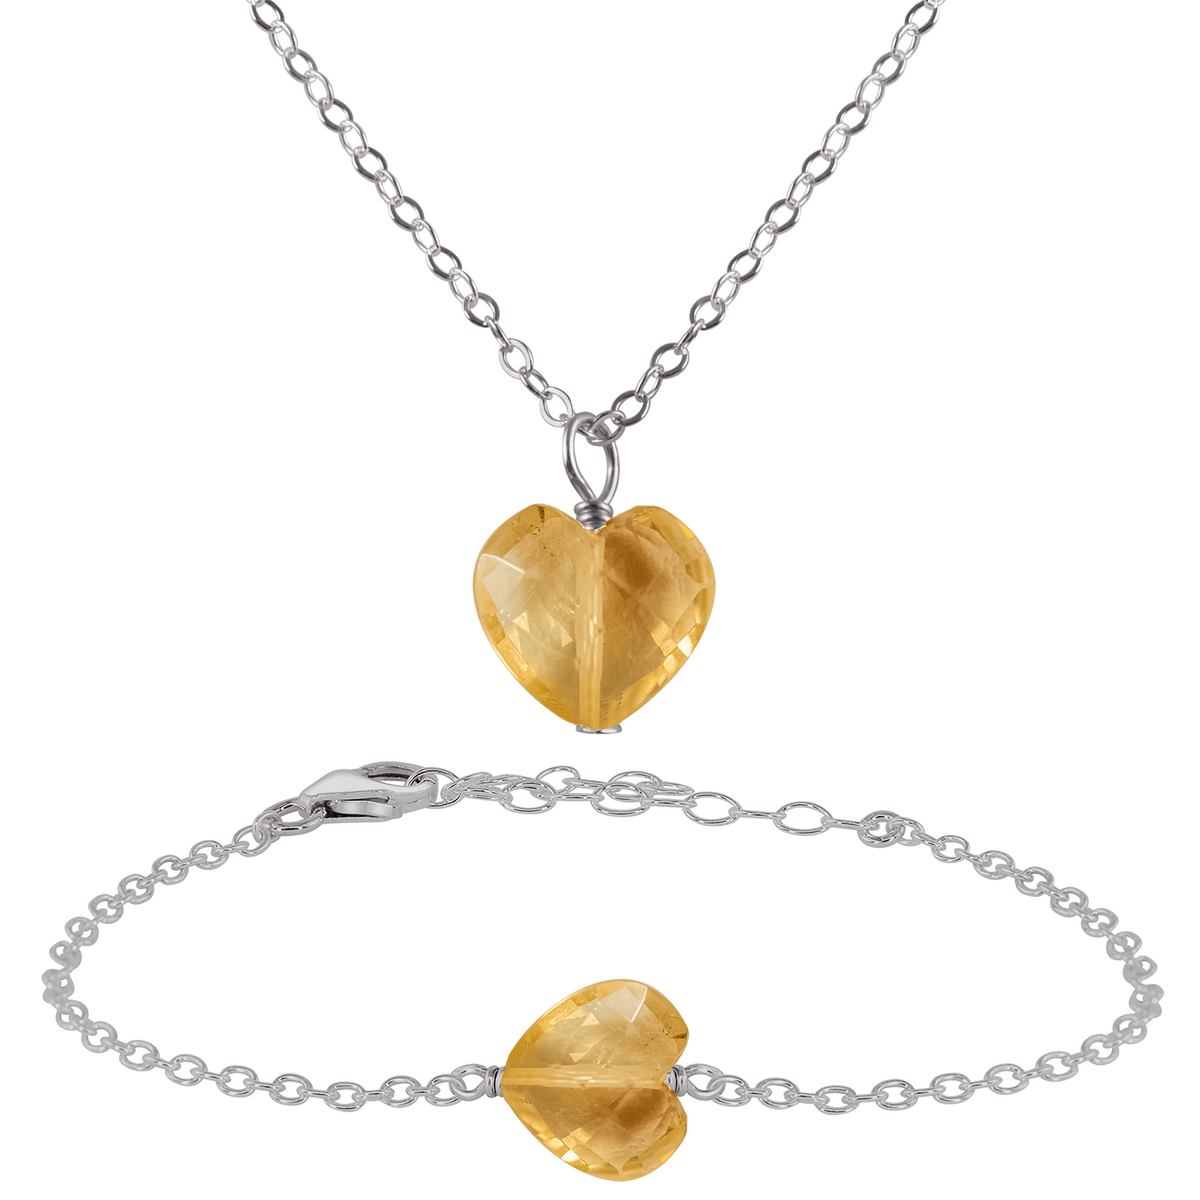 Citrine Crystal Heart Jewellery Set - Citrine Crystal Heart Jewellery Set - Stainless Steel / Cable / Necklace & Bracelet - Luna Tide Handmade Crystal Jewellery